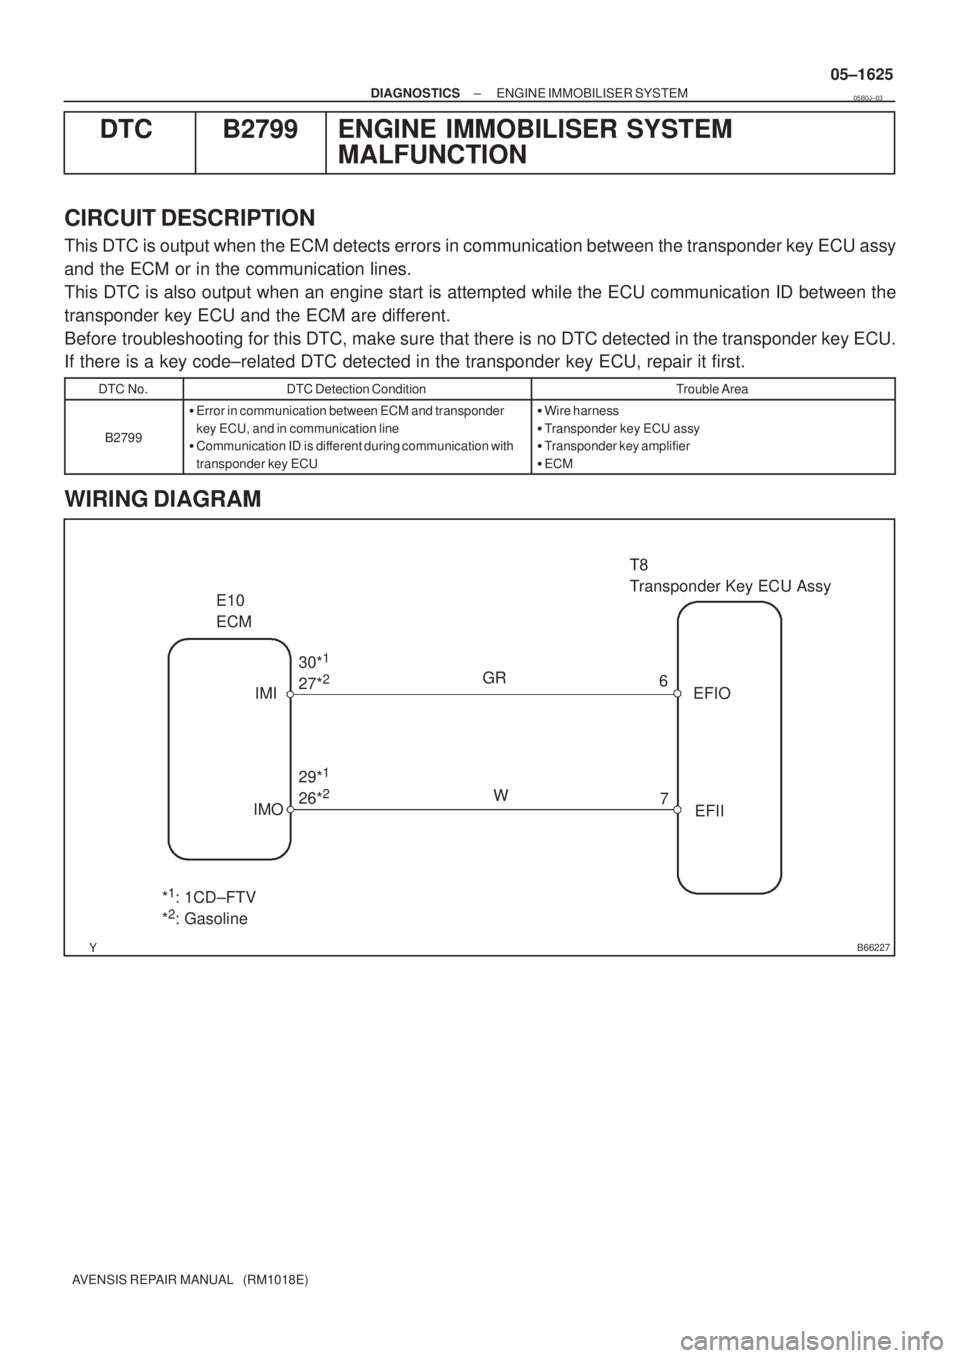 TOYOTA AVENSIS 2005  Service Repair Manual B66227
E10
ECMT8 
Transponder Key ECU Assy
IMI
IMO30*
1  
27*2
29*1 
26*2W GR
6
7EFIO
EFII
*1: 1CD±FTV 
*2: Gasoline
± DIAGNOSTICSENGINE IMMOBILISER SYSTEM
05±1625
AVENSIS REPAIR MANUAL   (RM1018E)